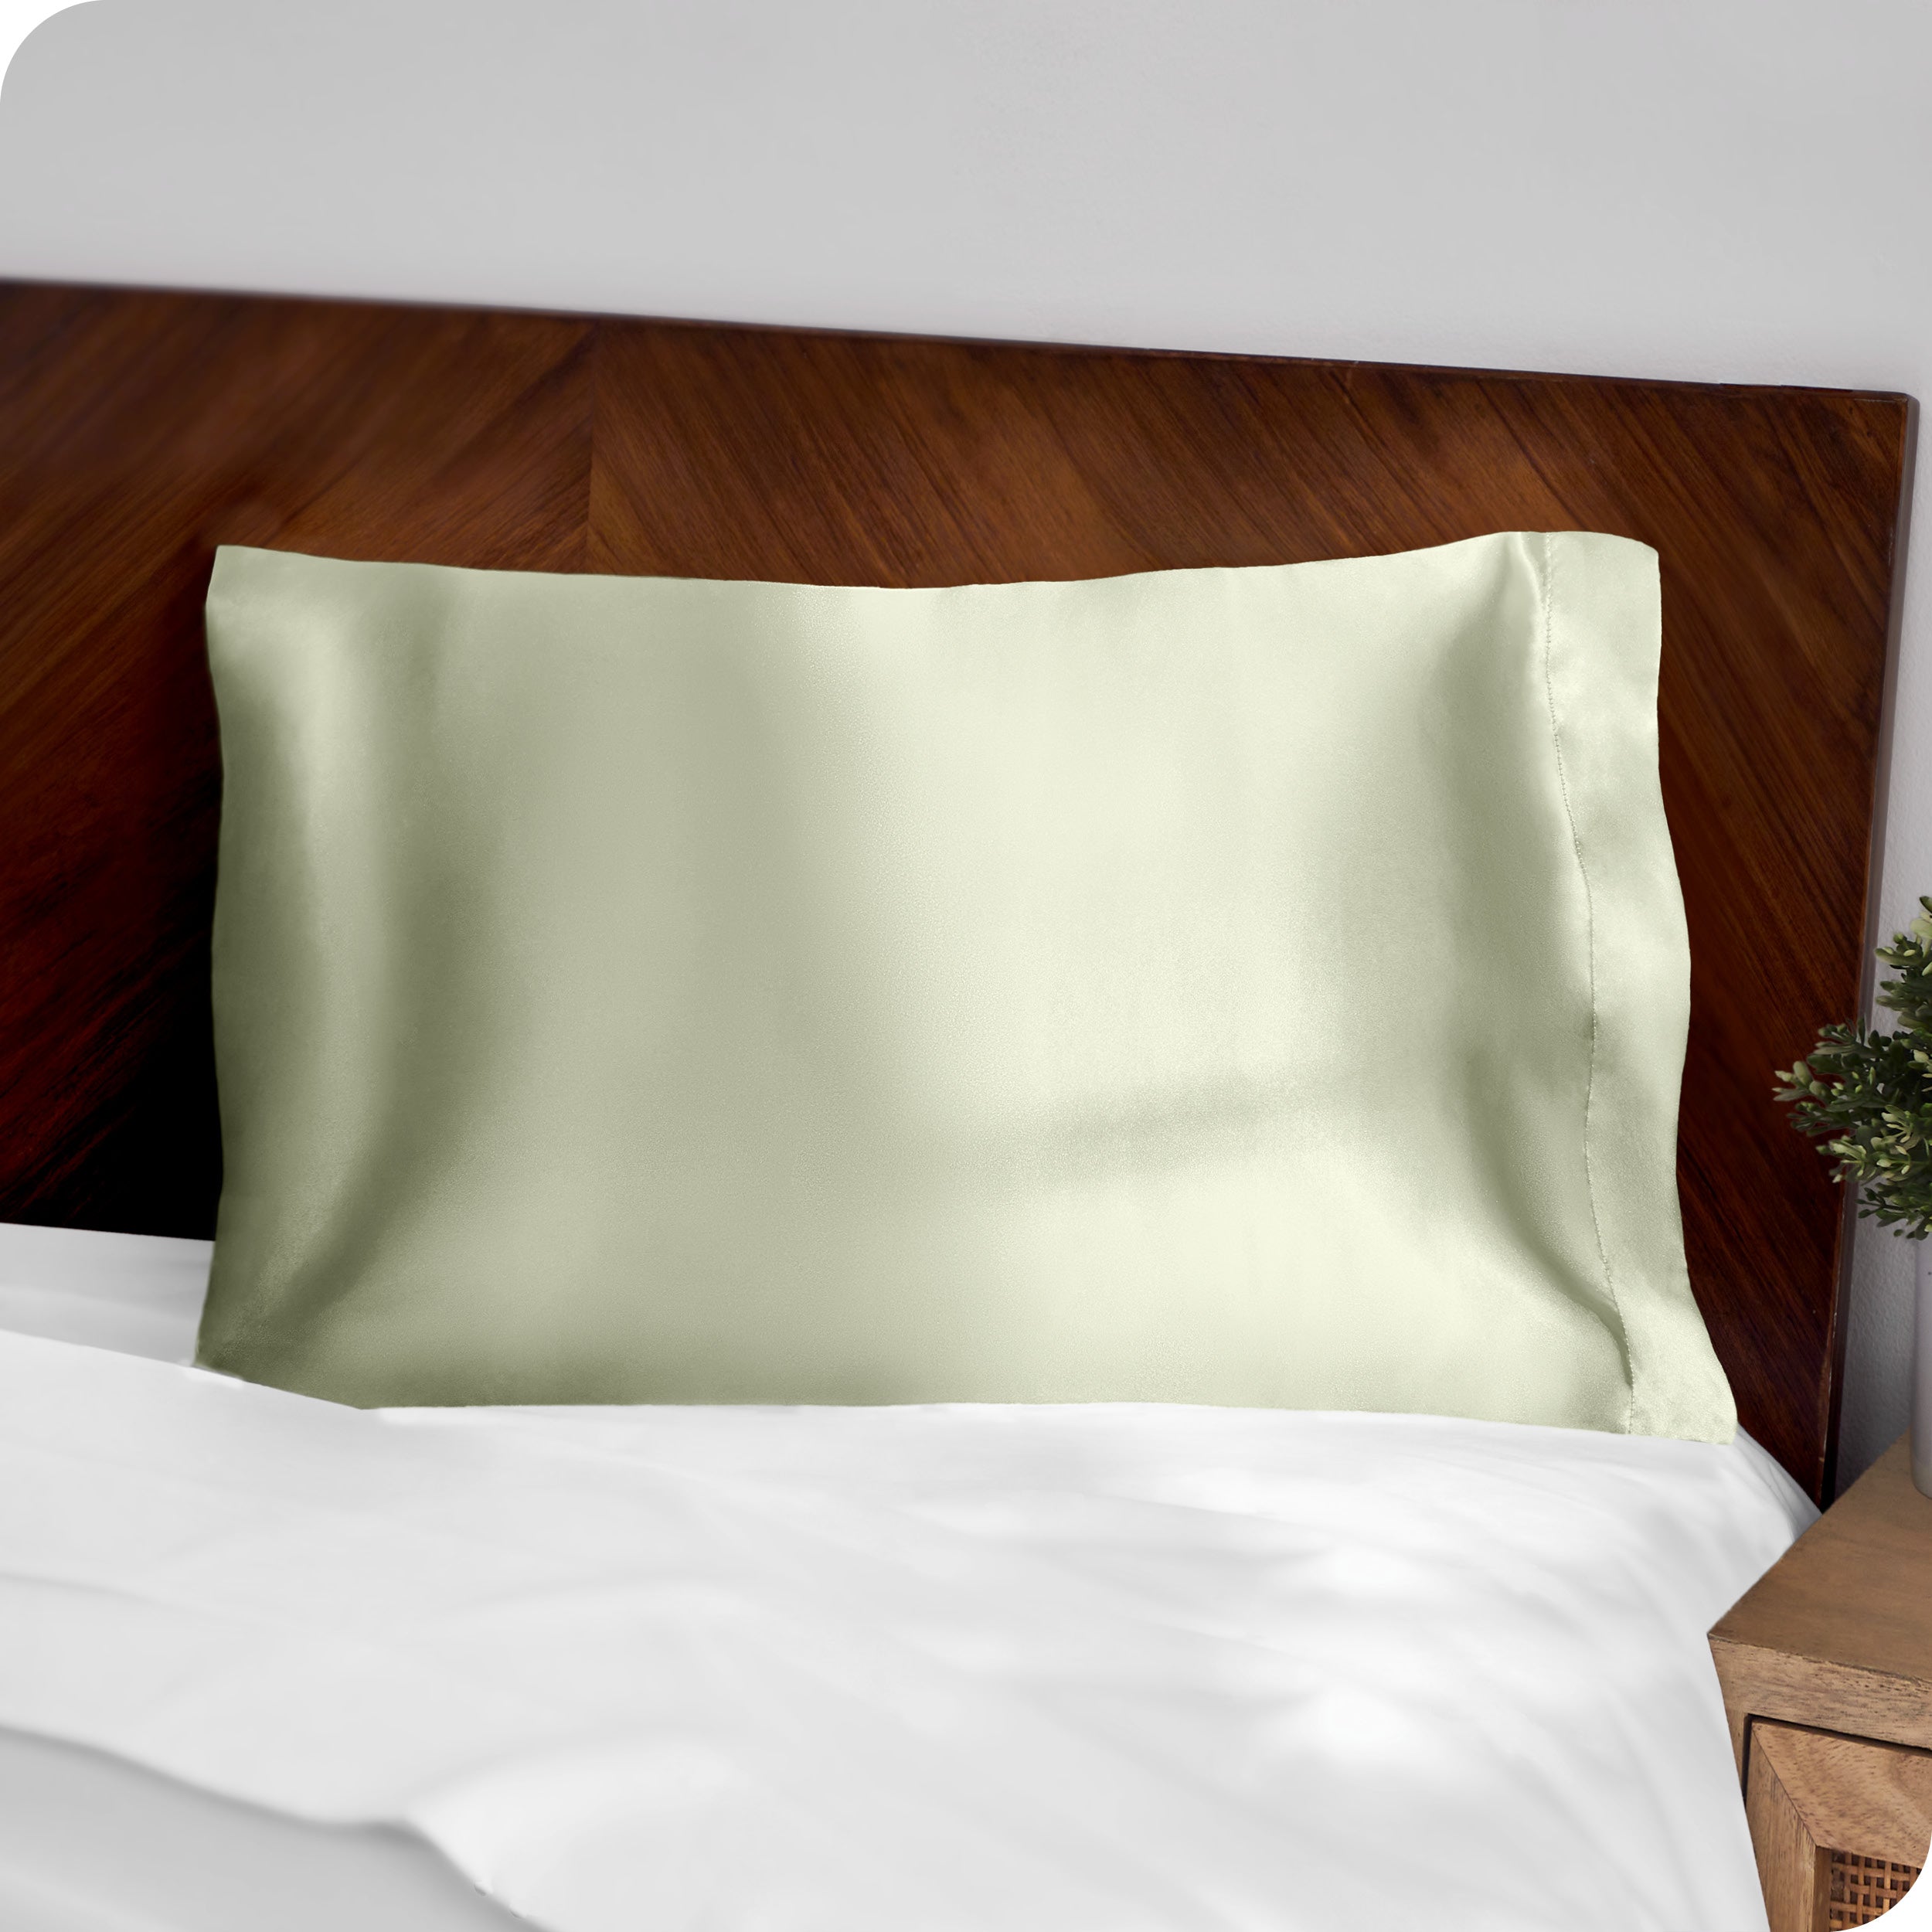 A green silk pillowcase on a pillow resting on a headboard